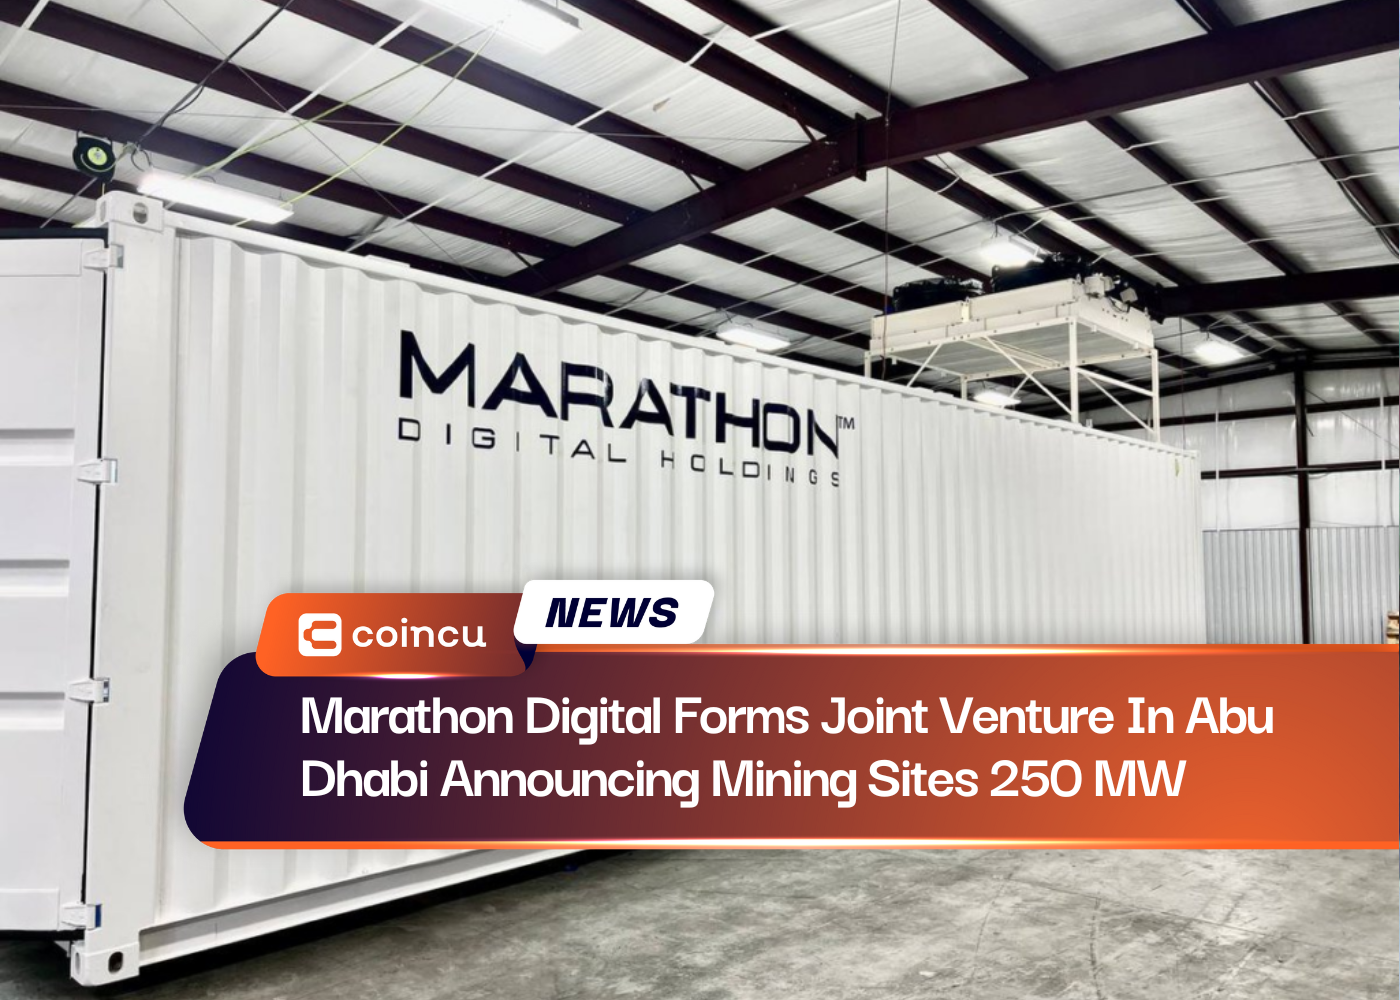 मैराथन डिजिटल ने अबू धाबी में 250 मेगावाट खनन स्थलों की घोषणा करते हुए संयुक्त उद्यम बनाया